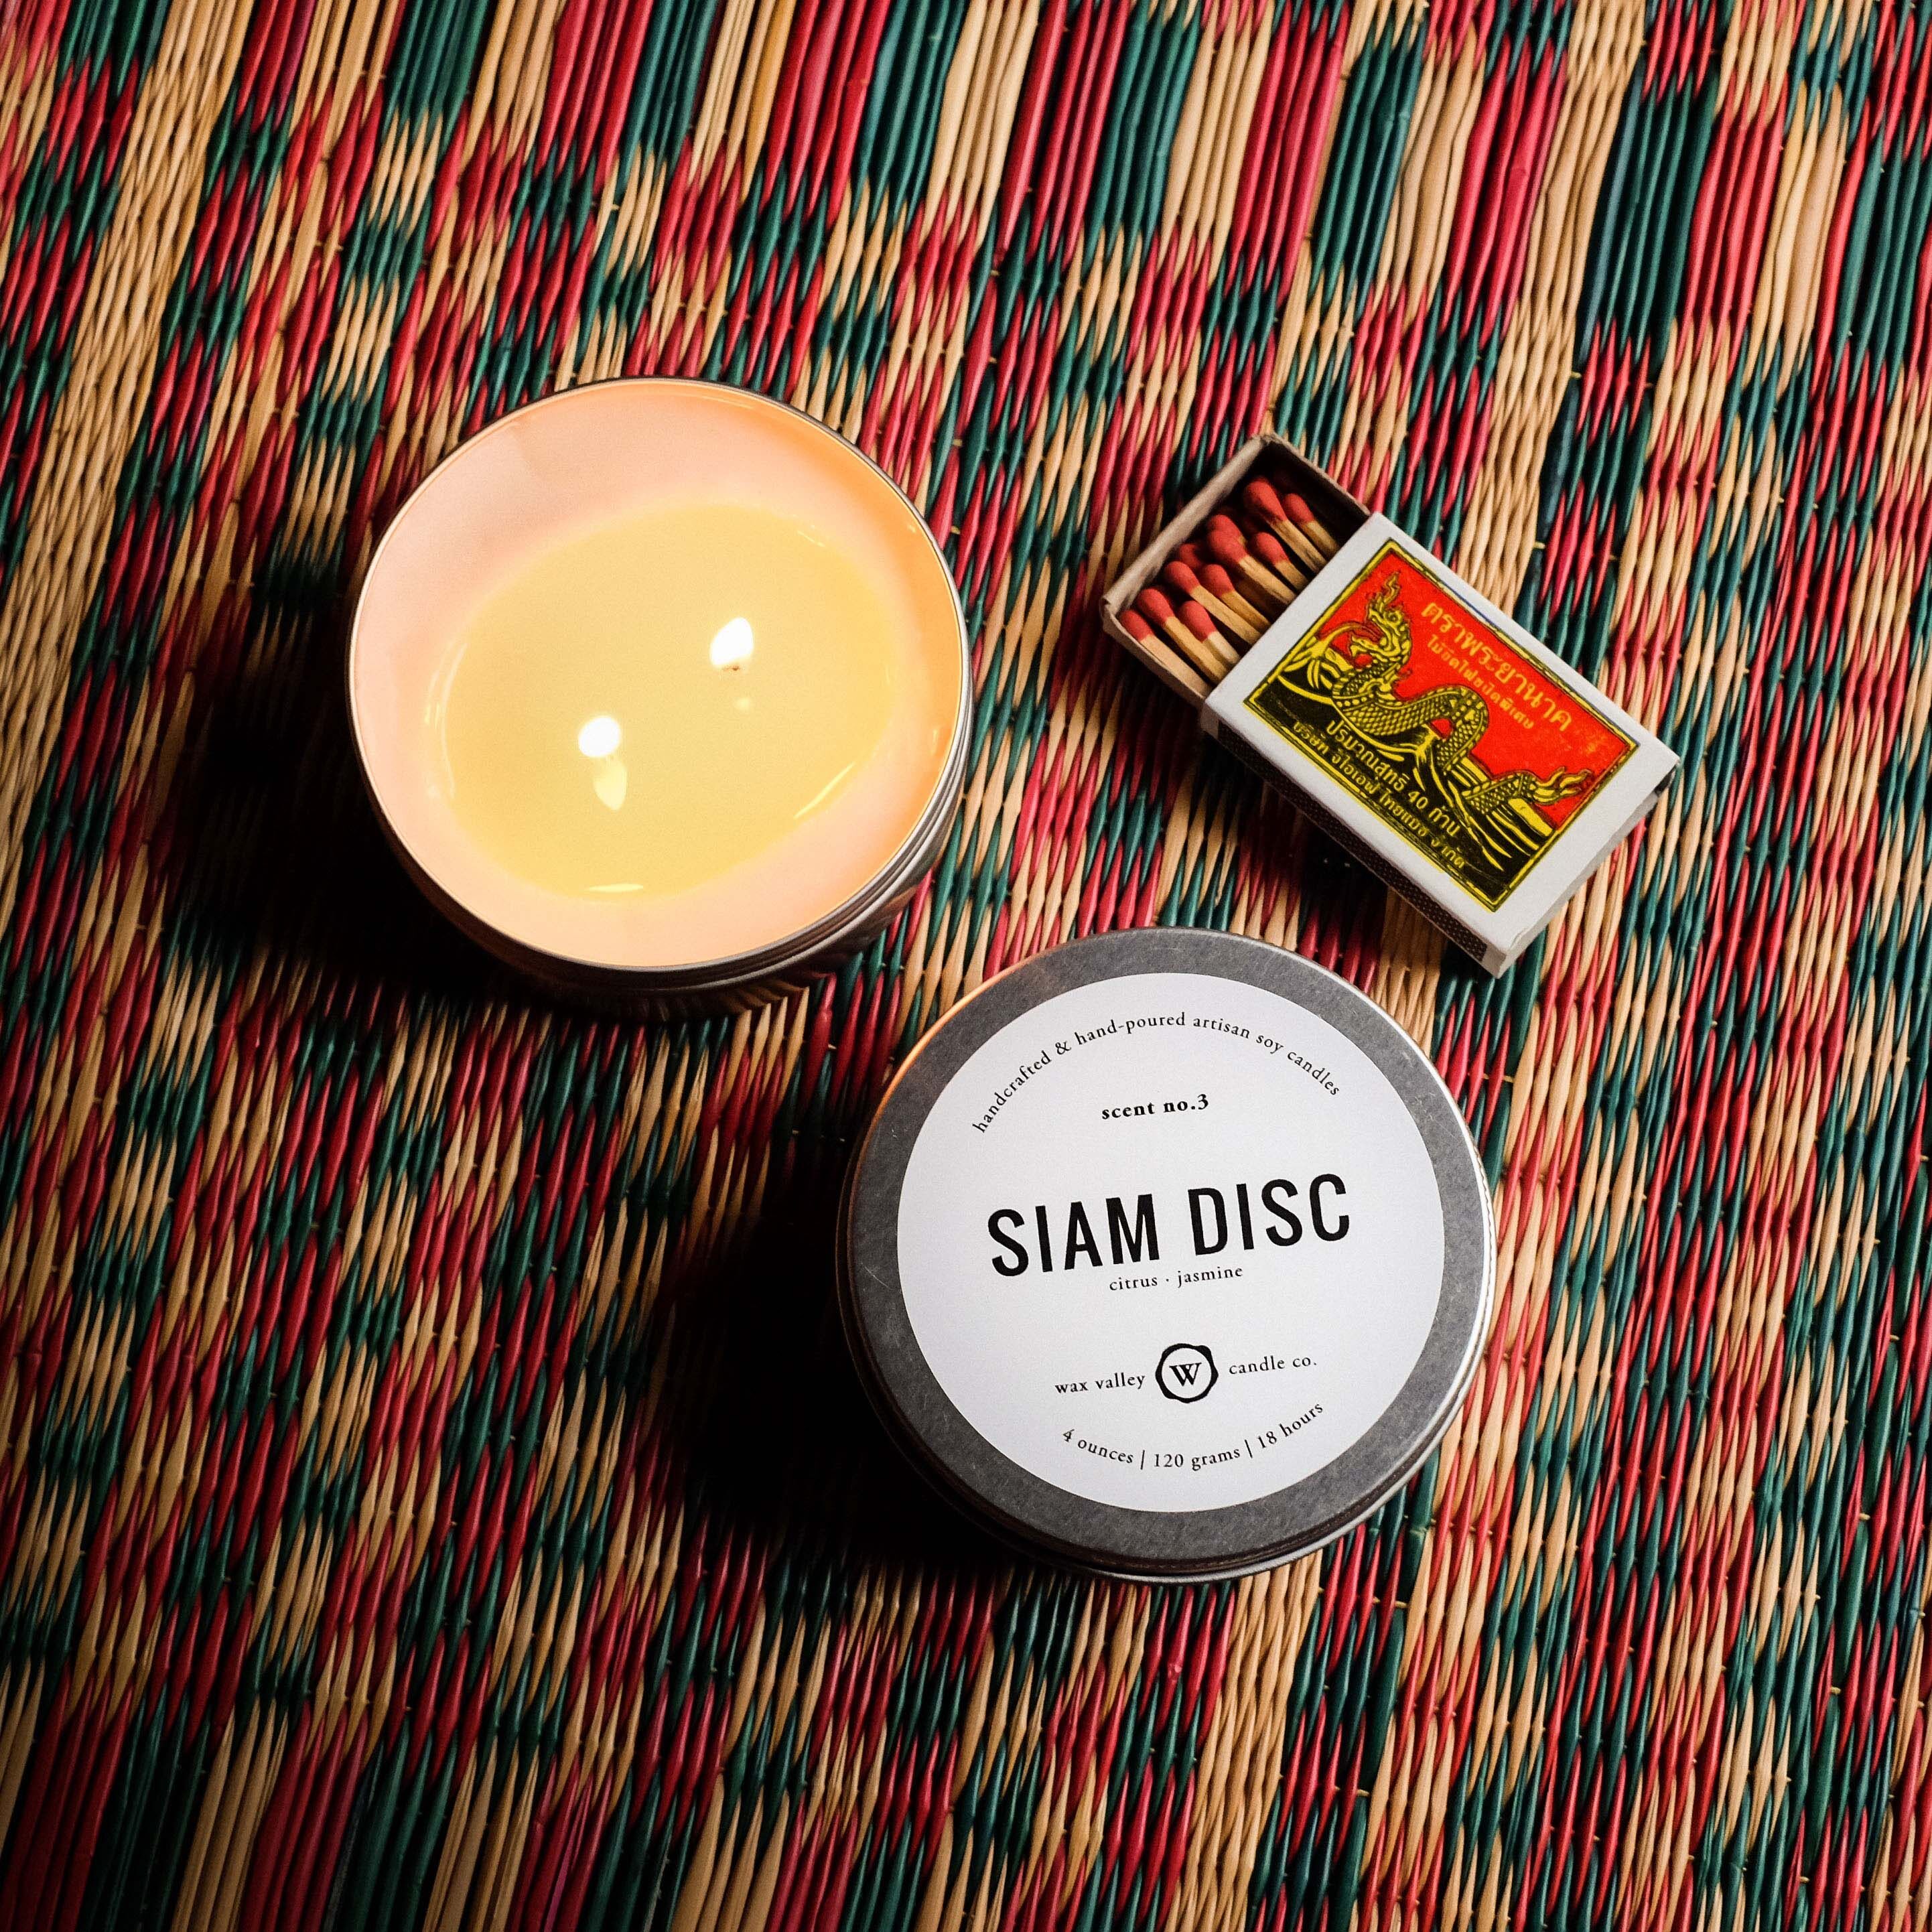 เทียนหอม เทียนไขถั่วเหลือง กลิ่น Siam Disc - Jasmine & Citrus